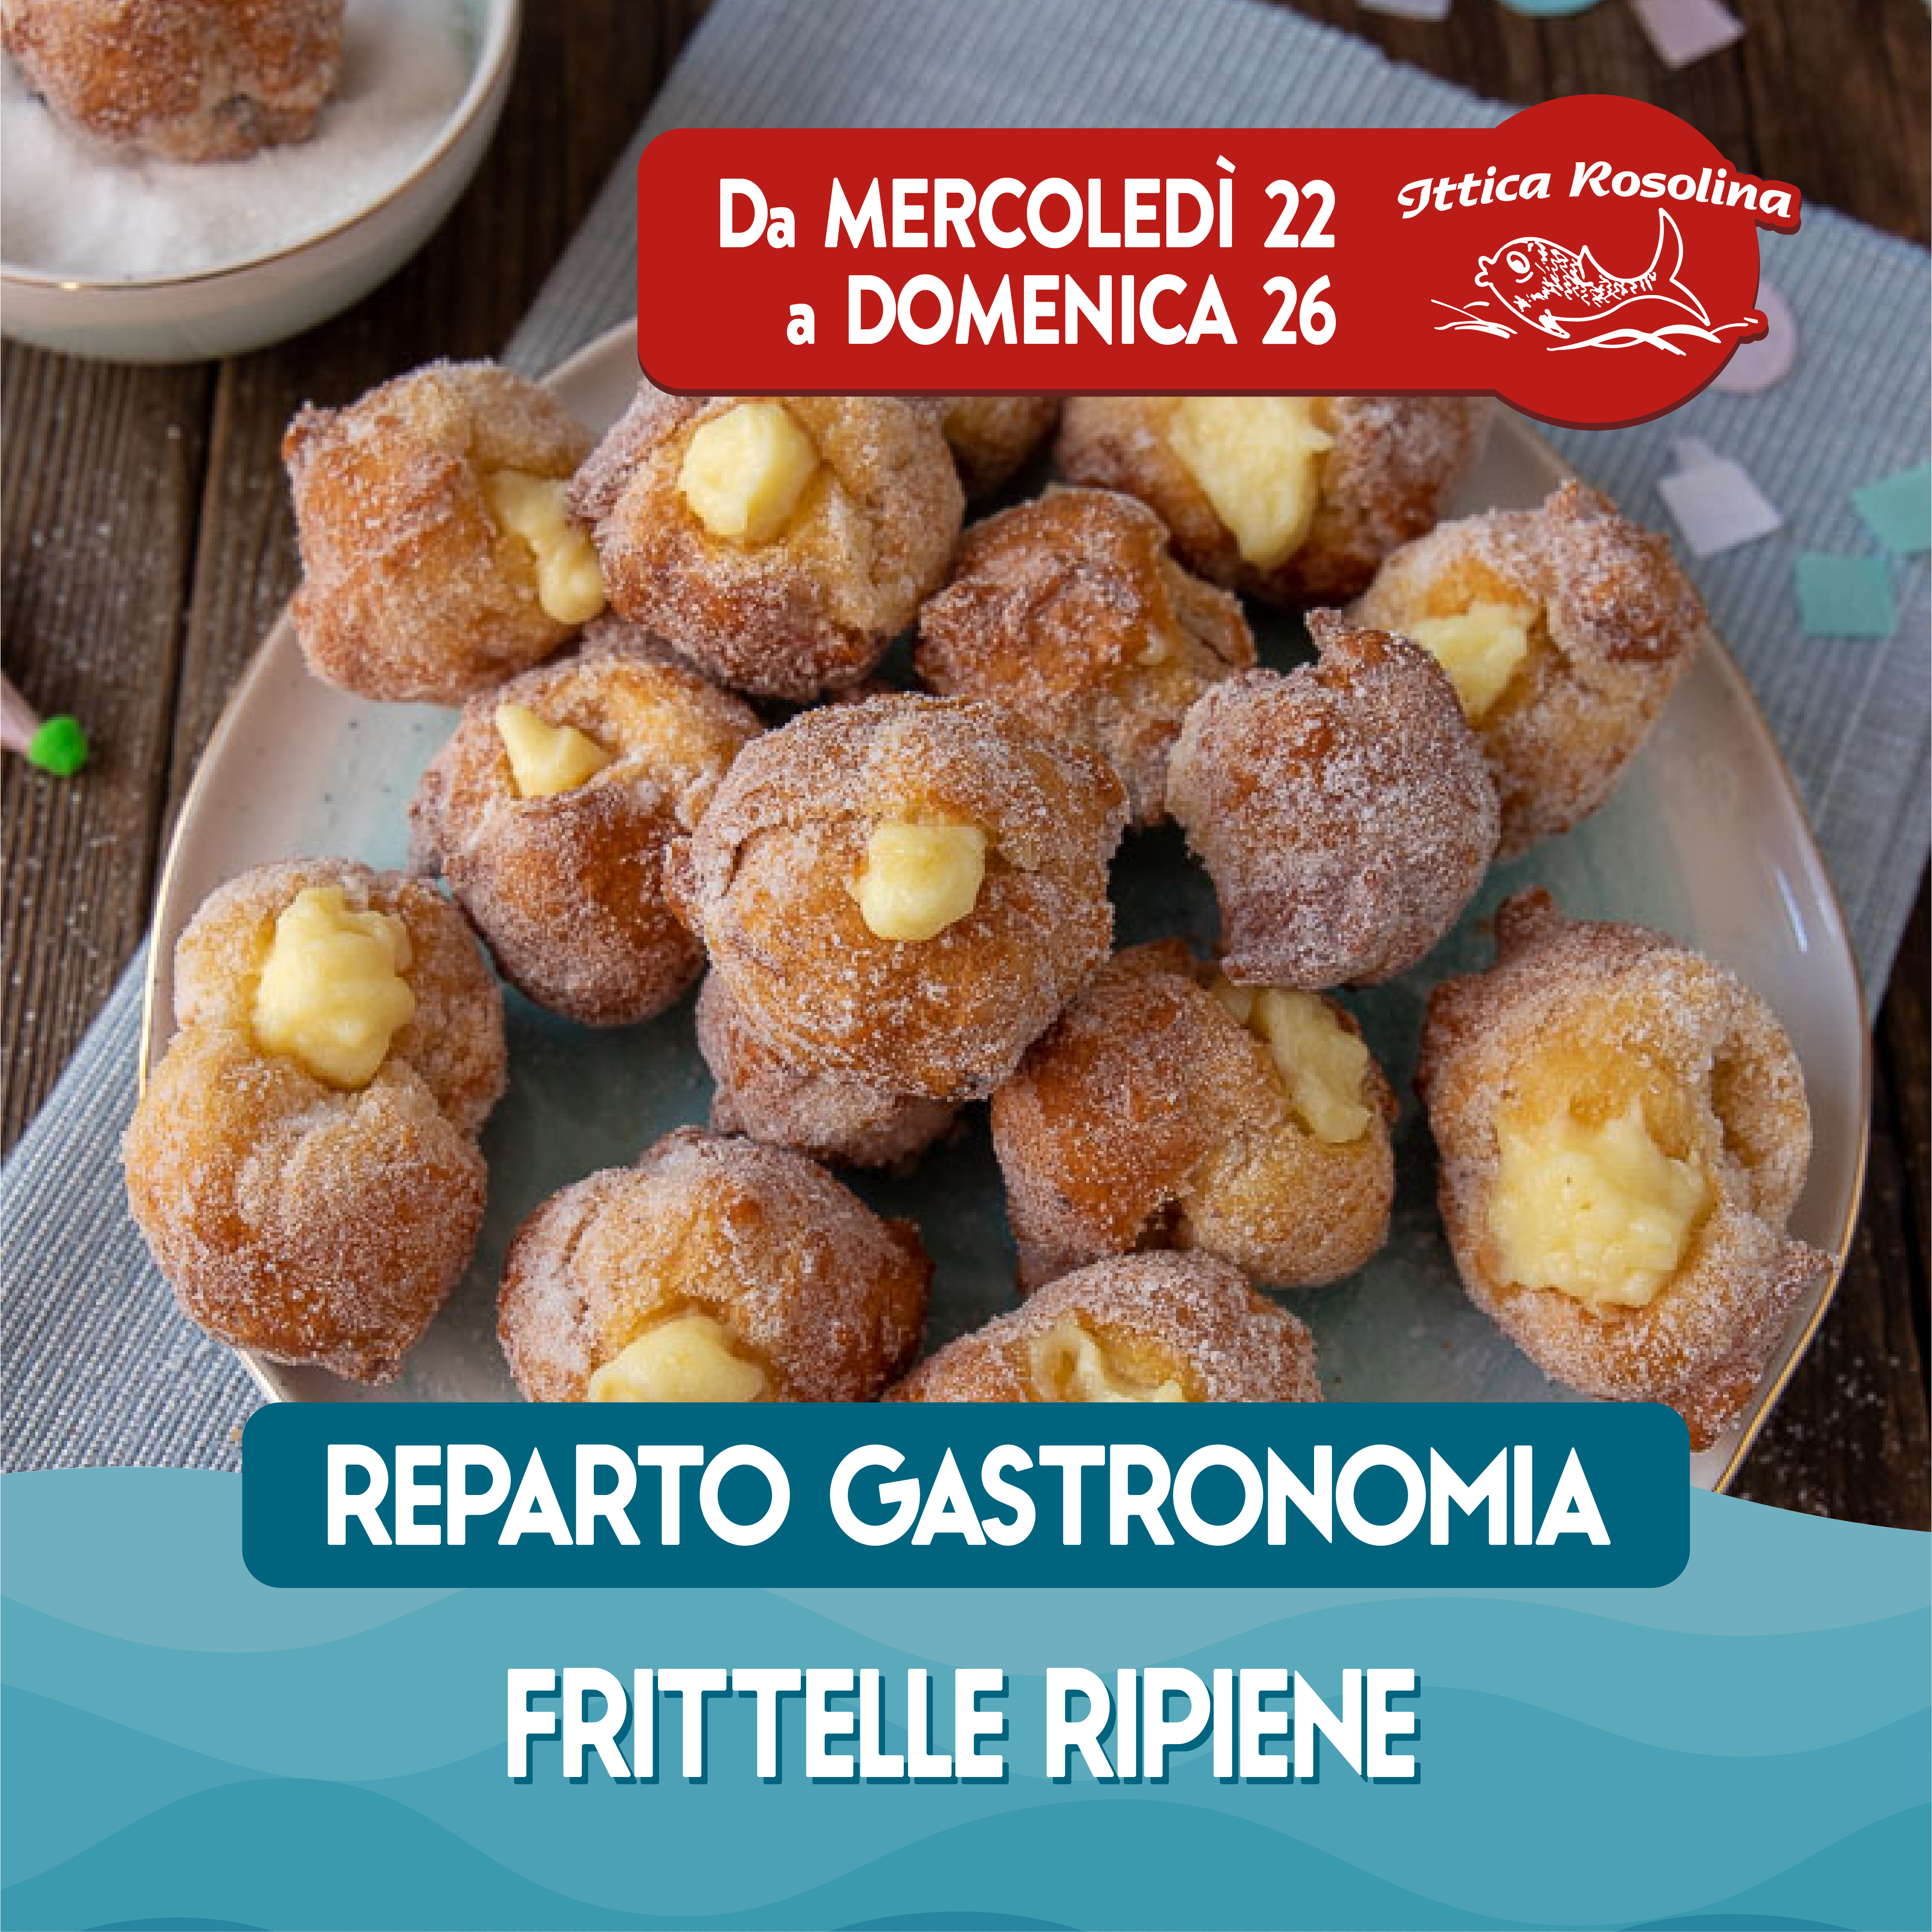 Promo REPARTO GASTRONOMIA - Ittica Rosolina